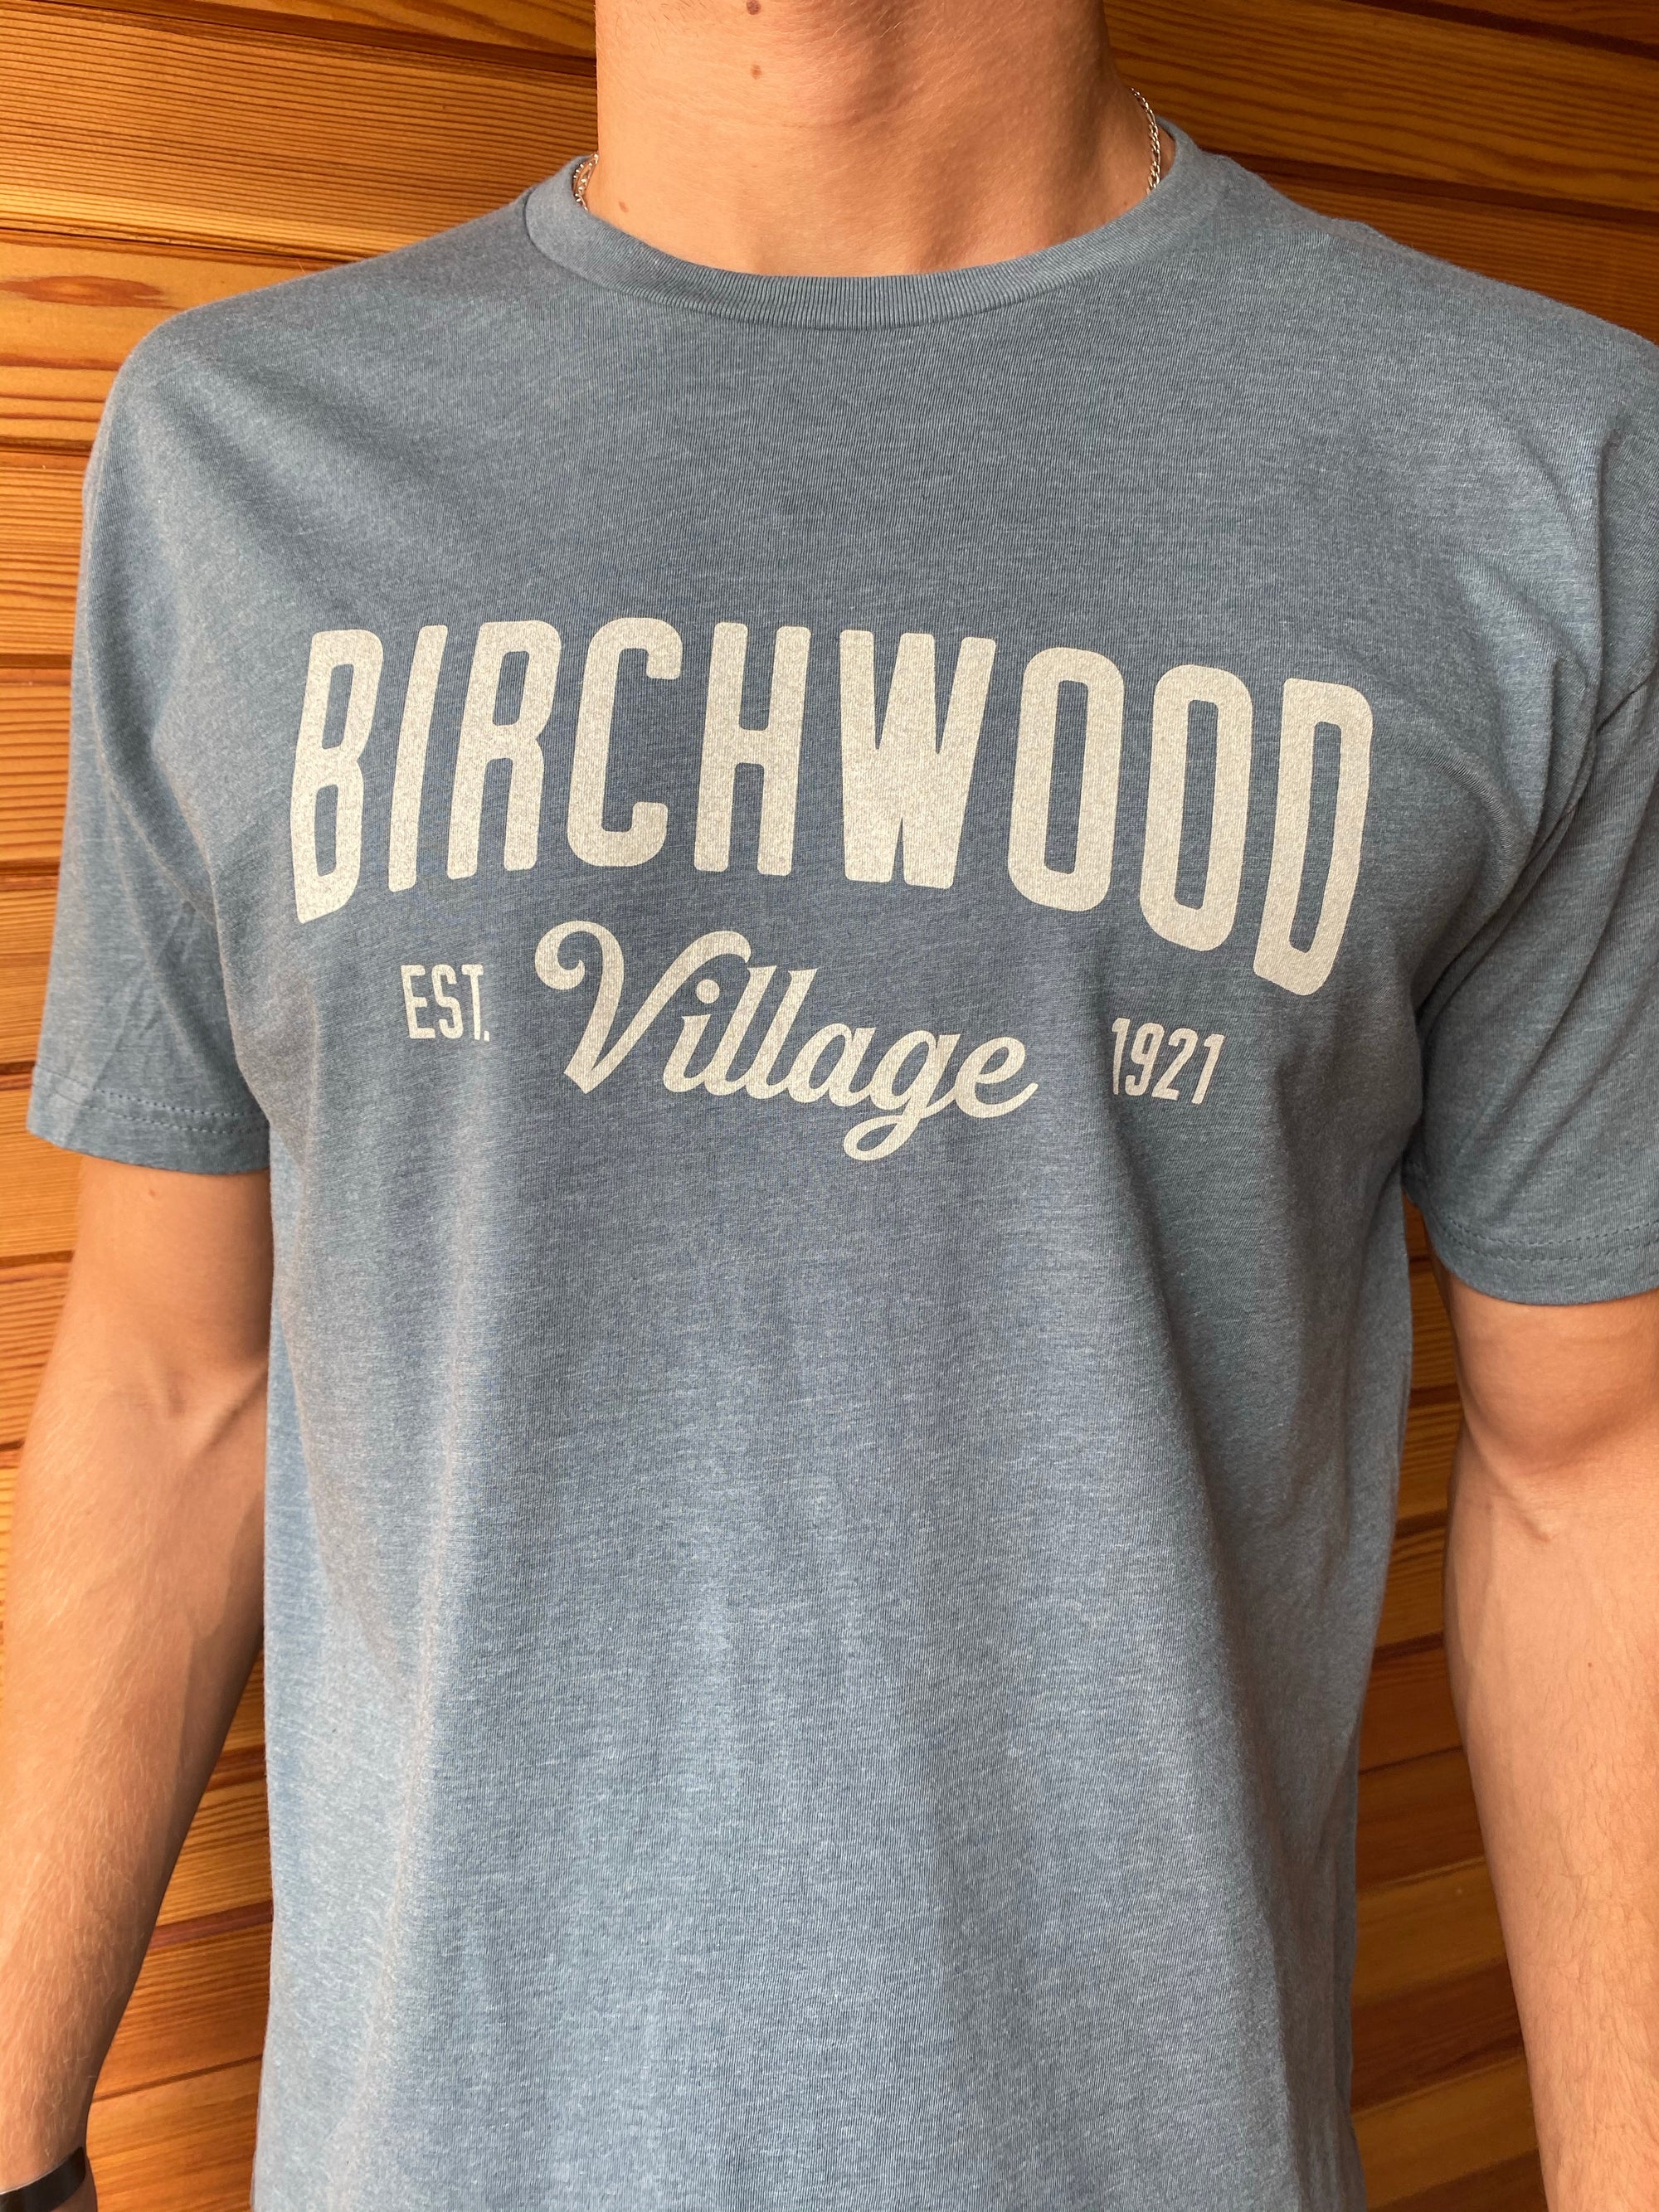 Birchwood Village